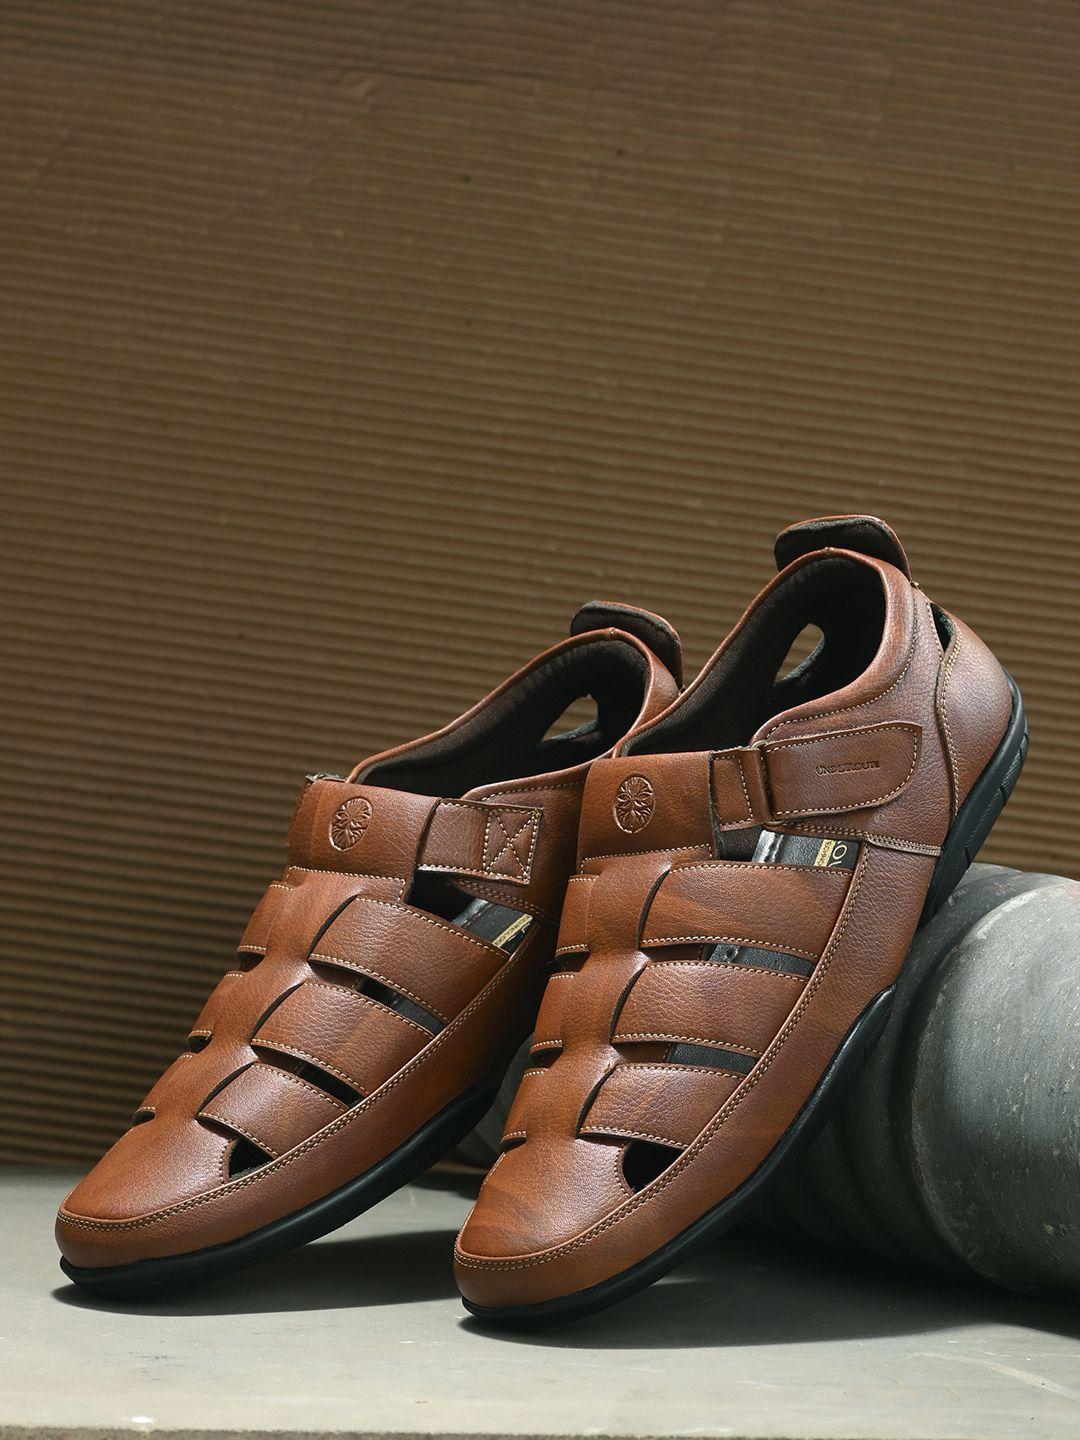 UNDERROUTE Men Tan Leather Shoe-Style Sandals